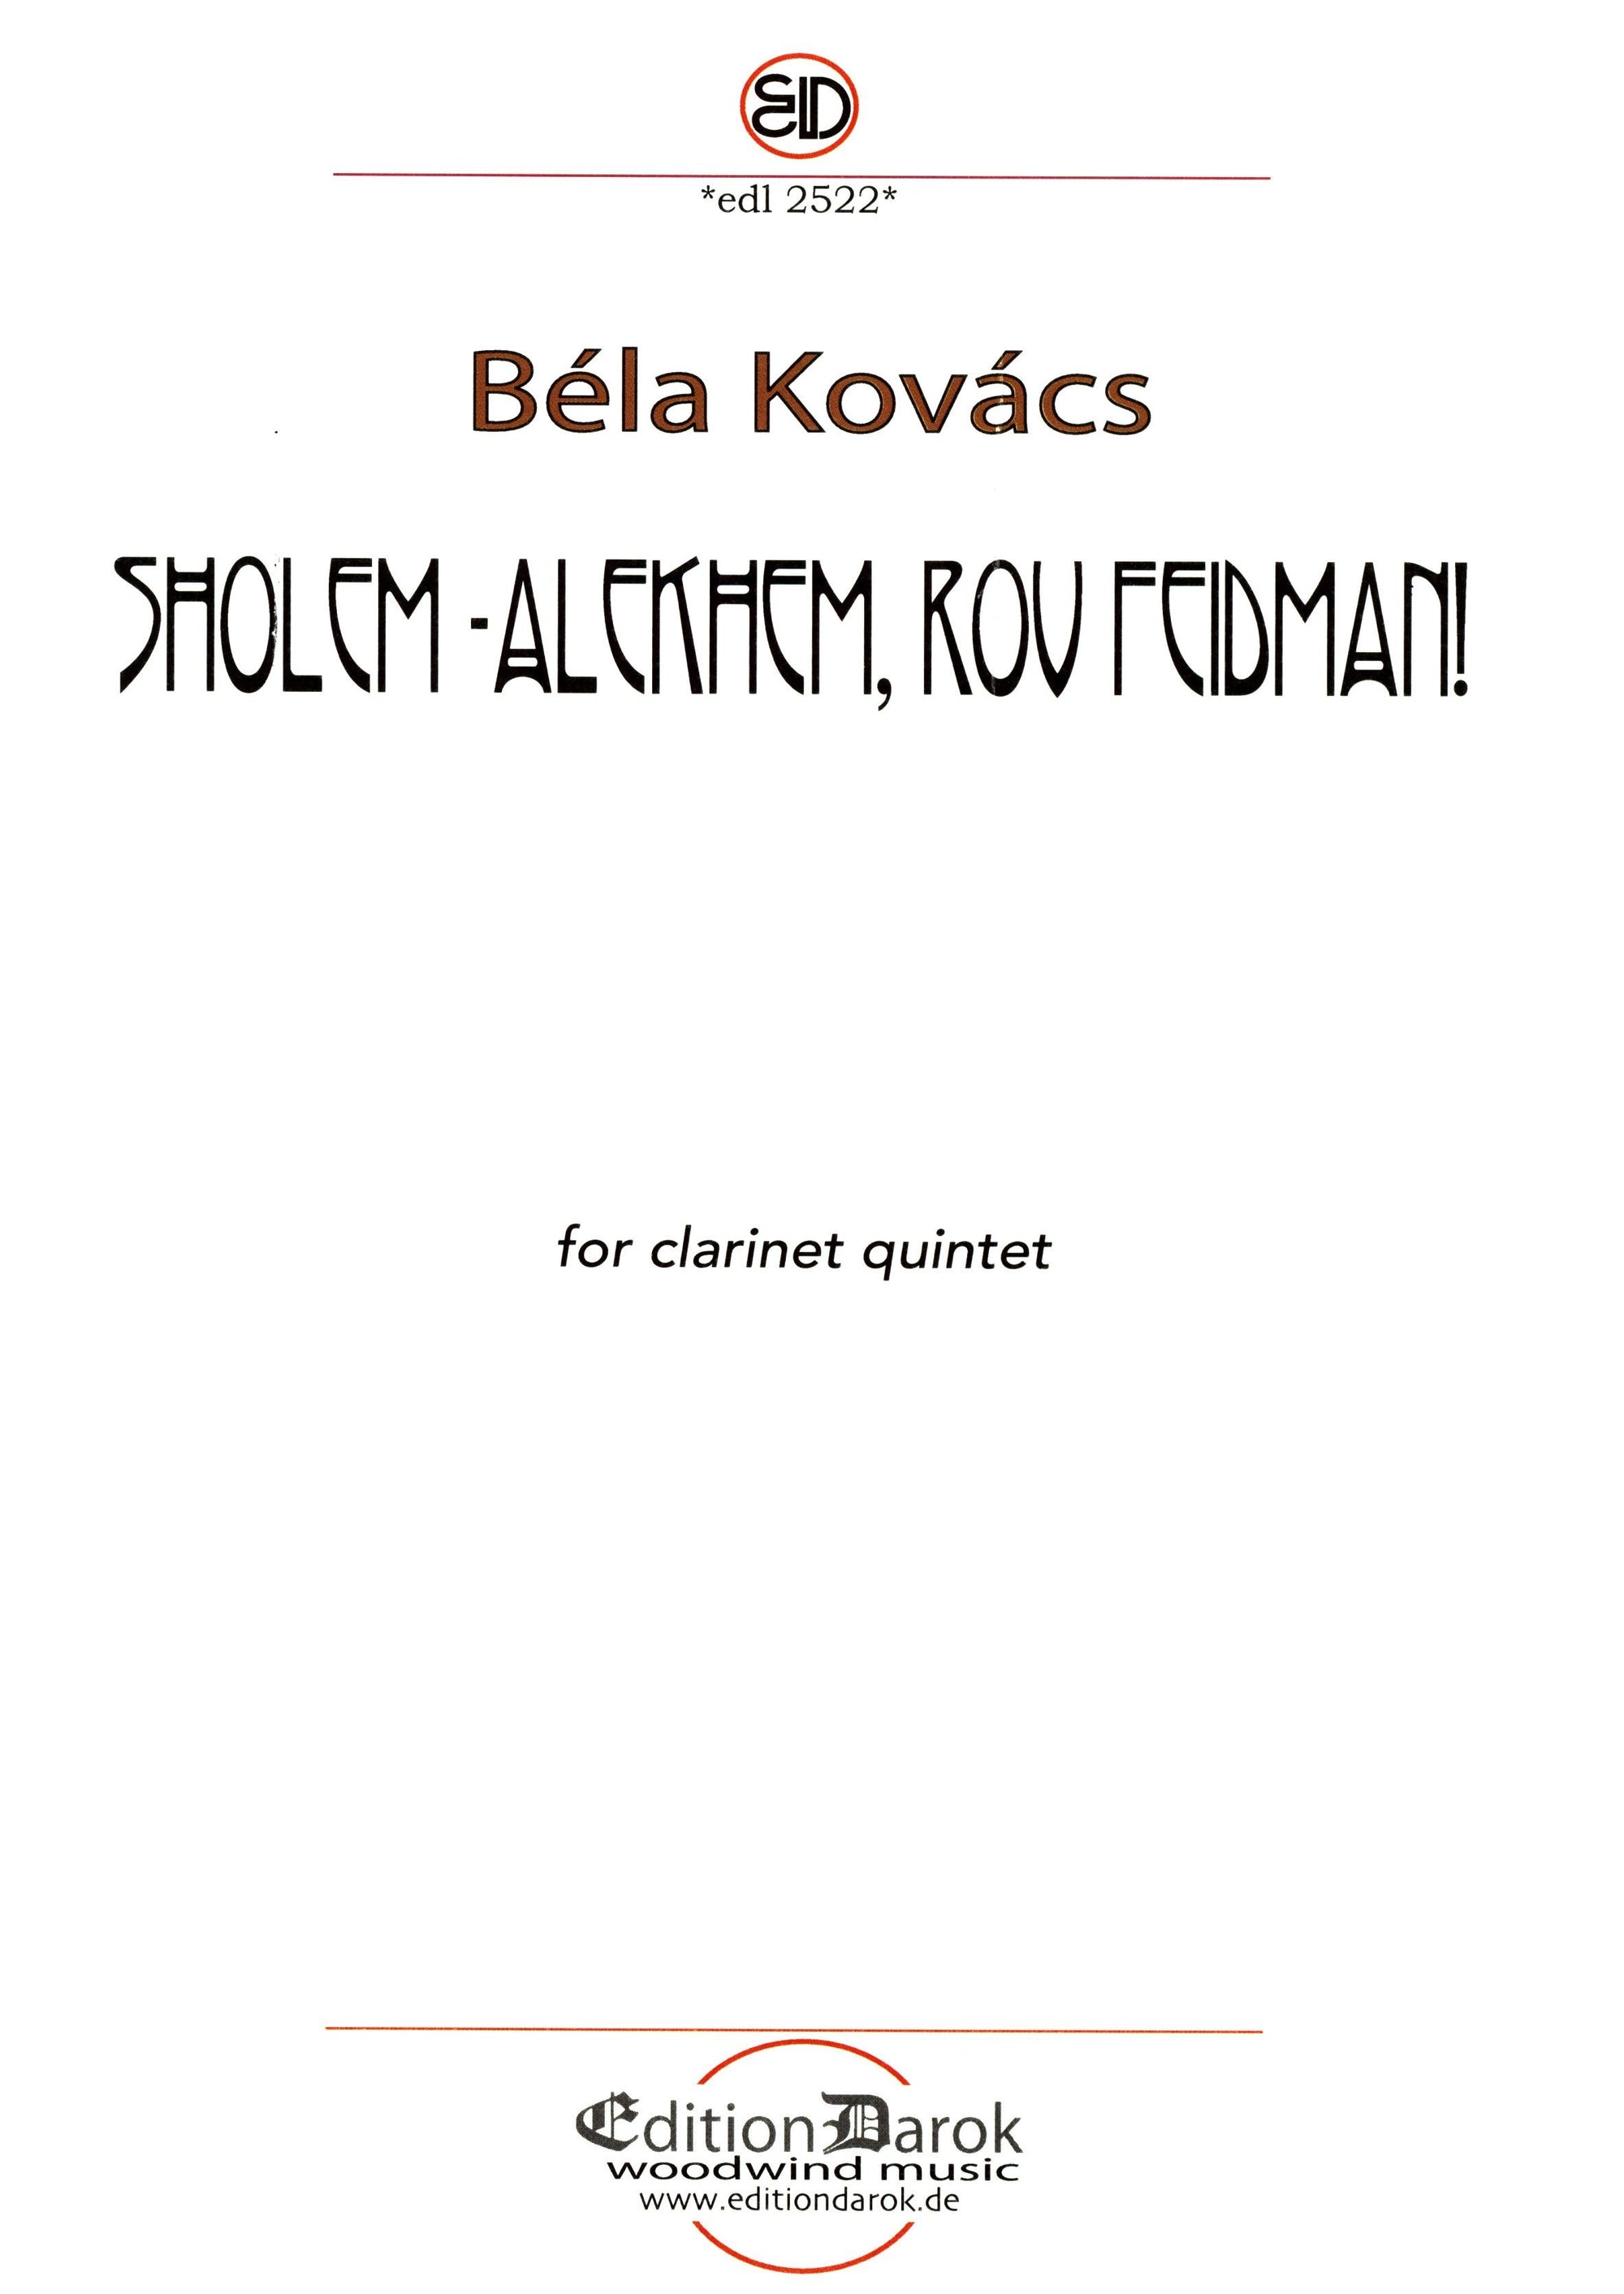 Kovács: Sholem-Alekhem, rov Feidman! (for clarinet quintet)